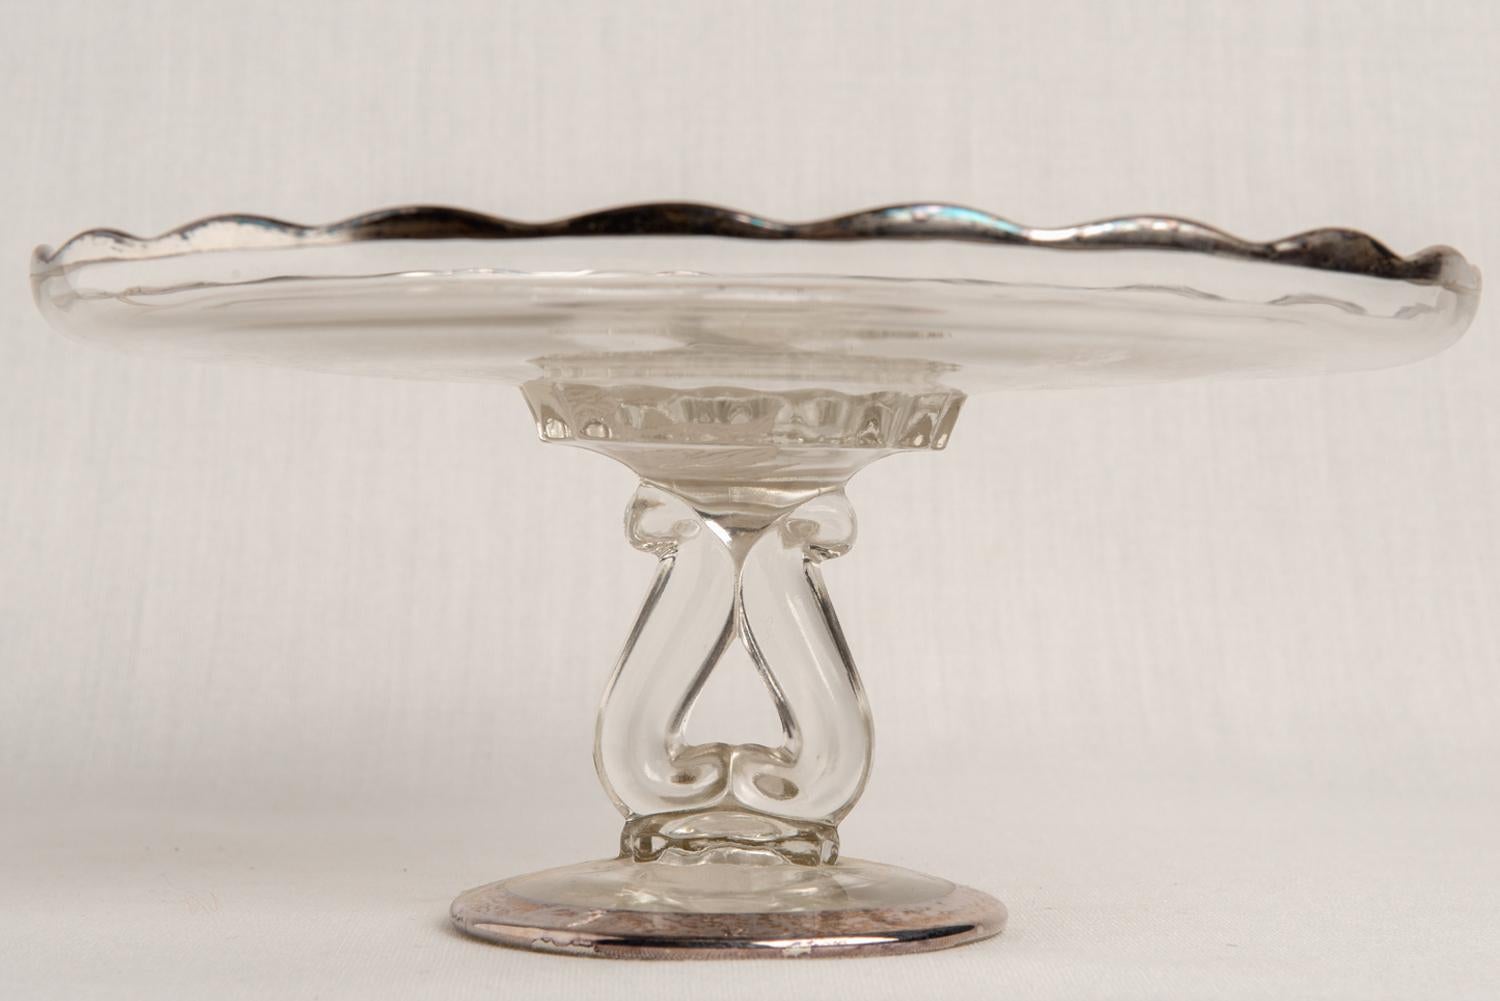 Eleganter Patisserie-Ständer mit in Silber gedruckten Blumen auf dem Glas: genannt 